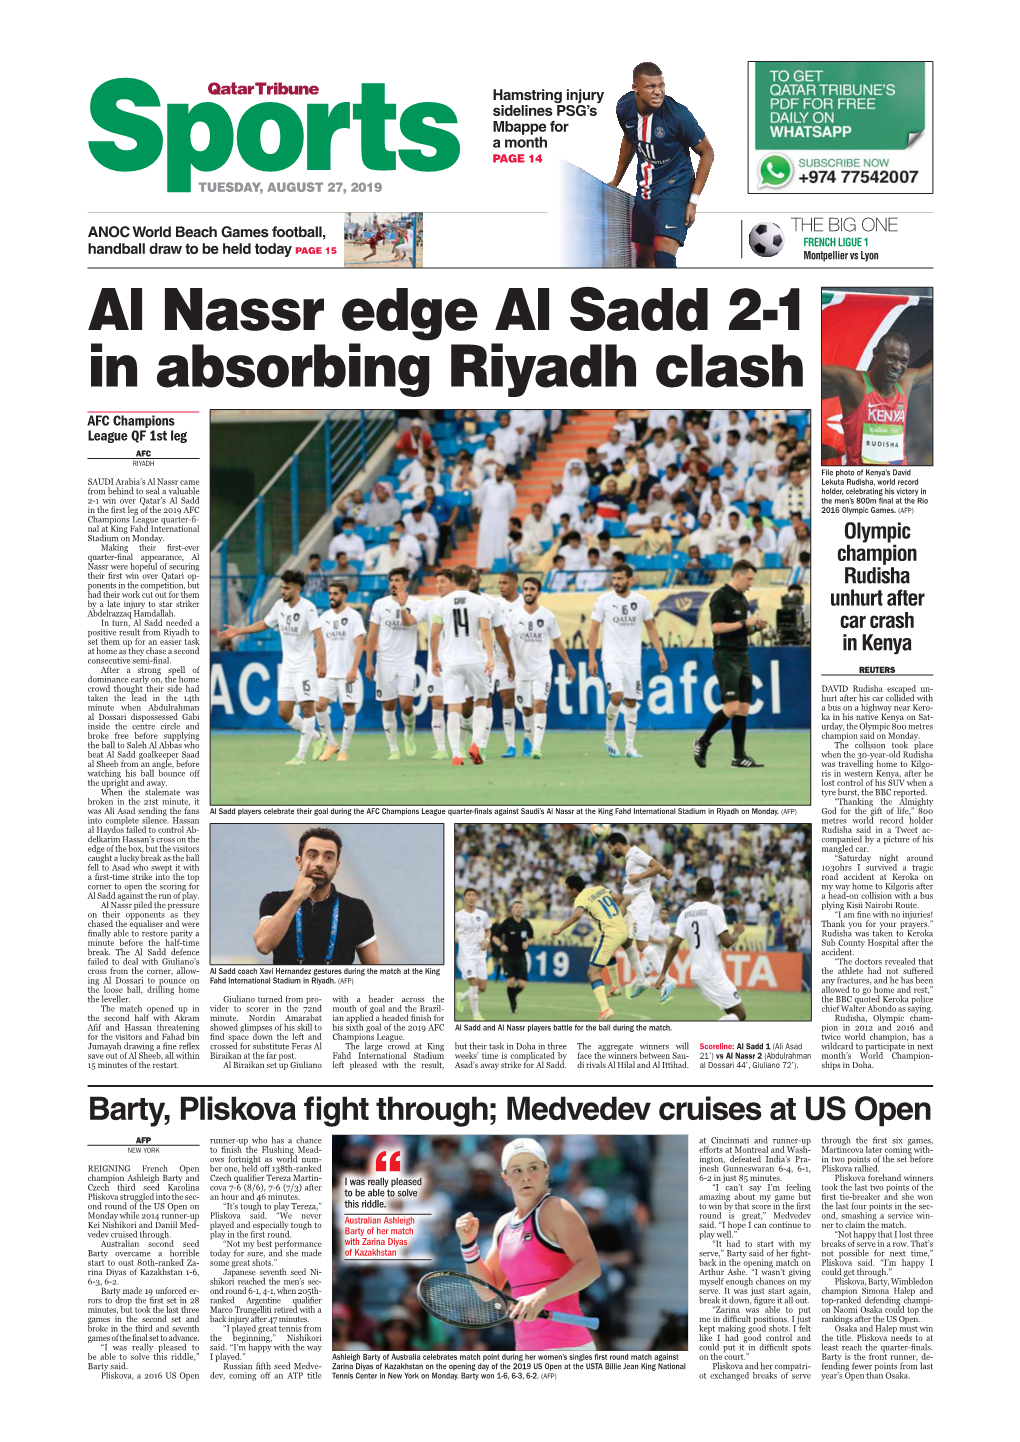 Al Nassr Edge Al Sadd 2-1 in Absorbing Riyadh Clash